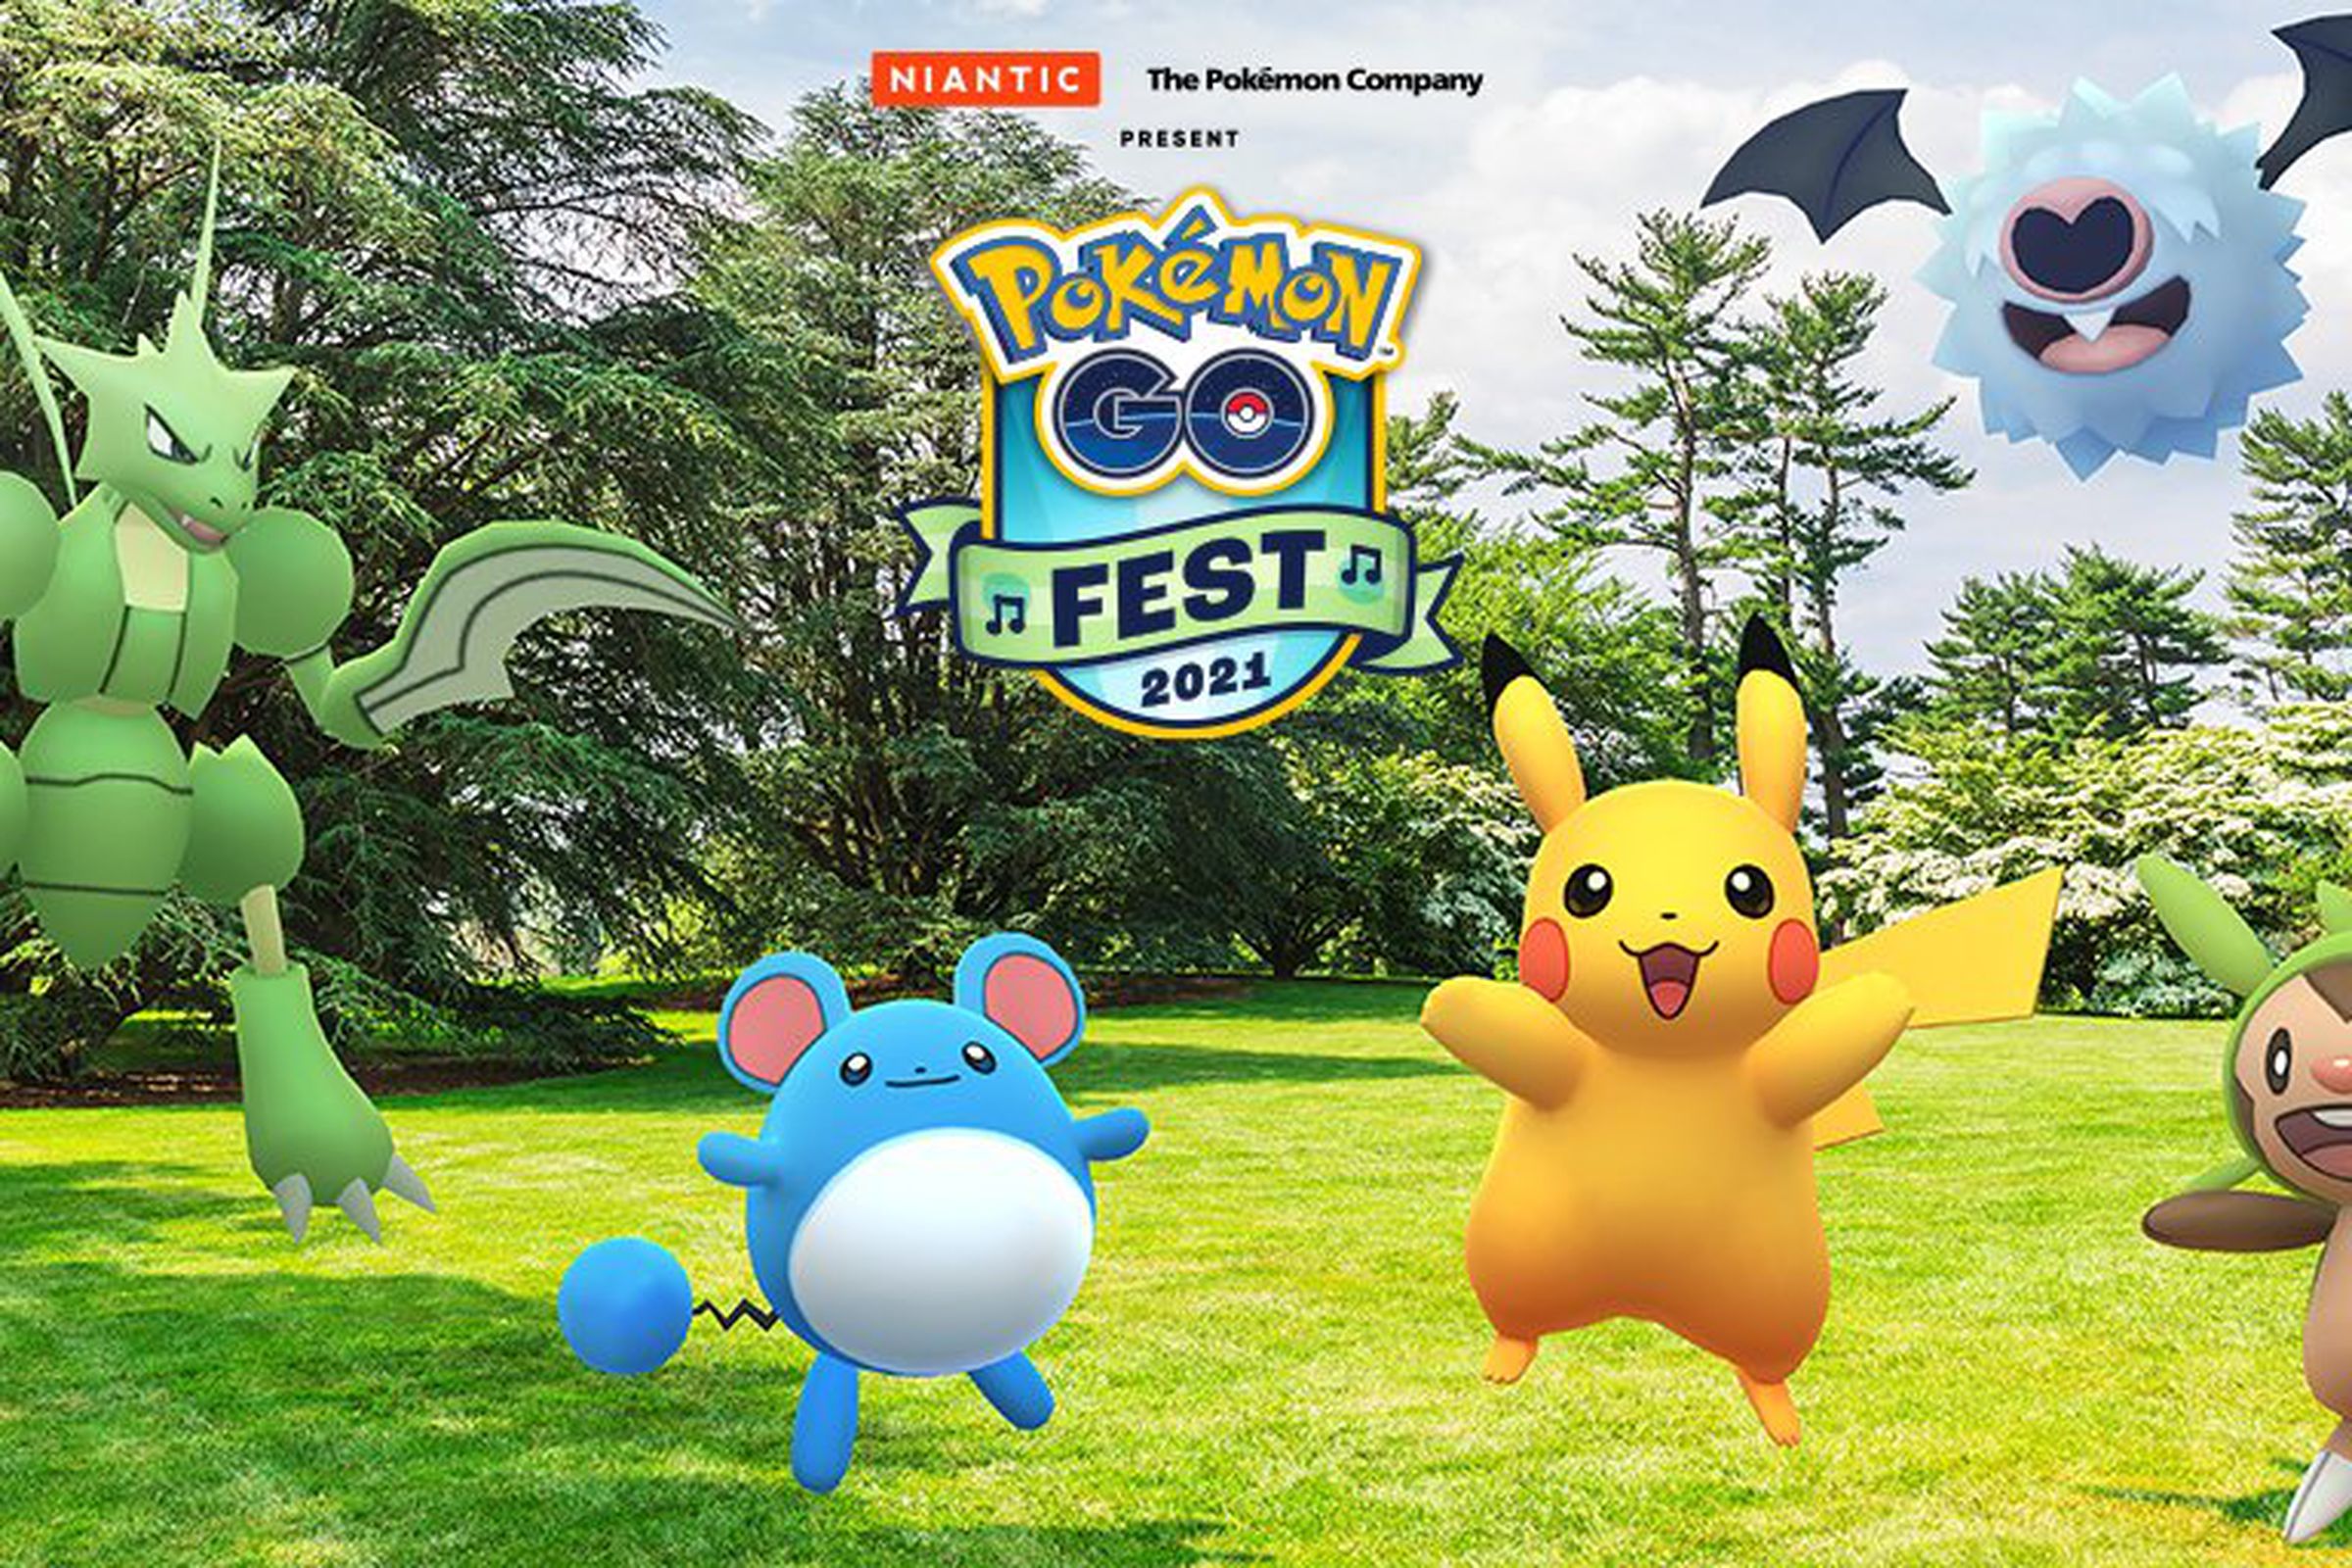 A promotional image for Pokémon Go Fest 2021.